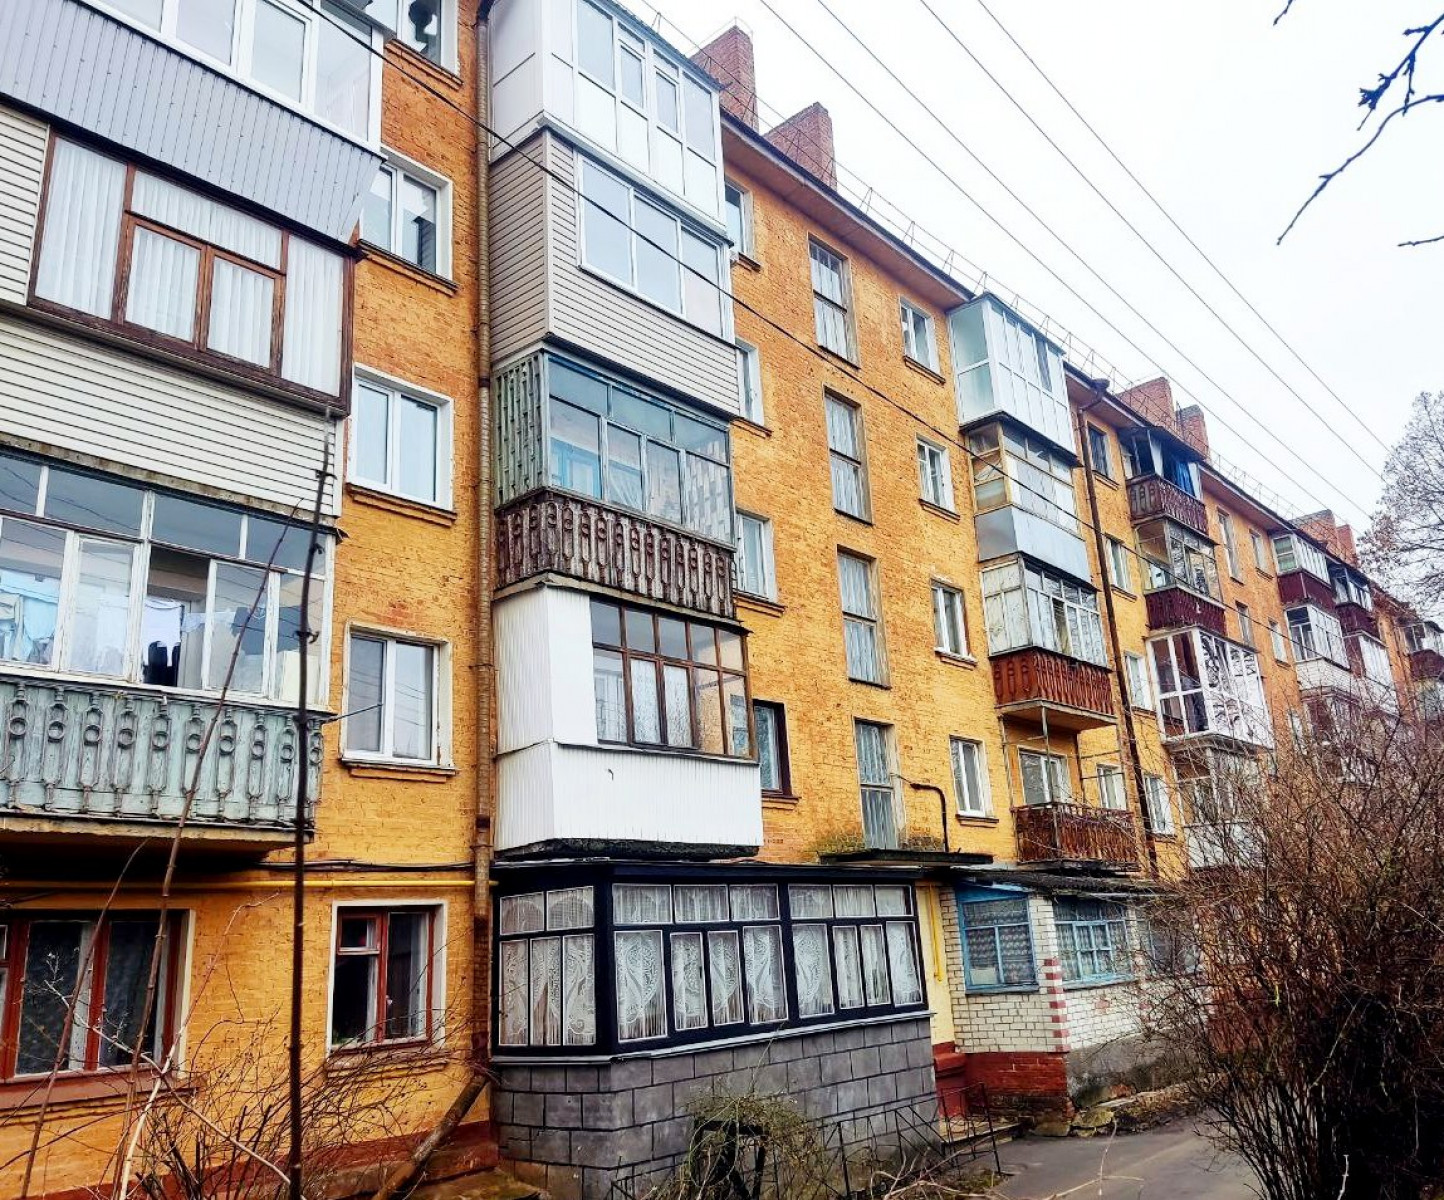 Продается однокомнатная квартира в центре города.